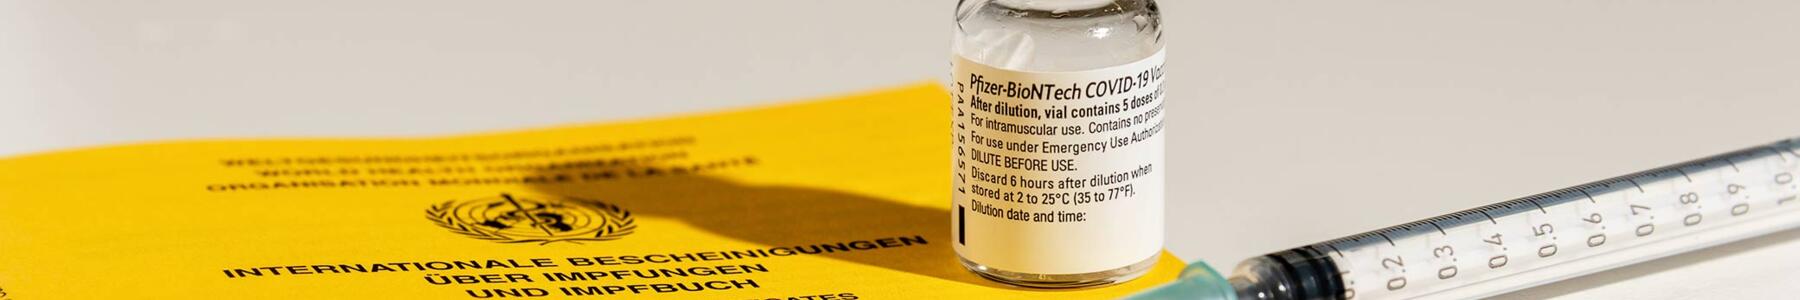 Corona-Pandemie: Kommt jetzt die Impflicht?